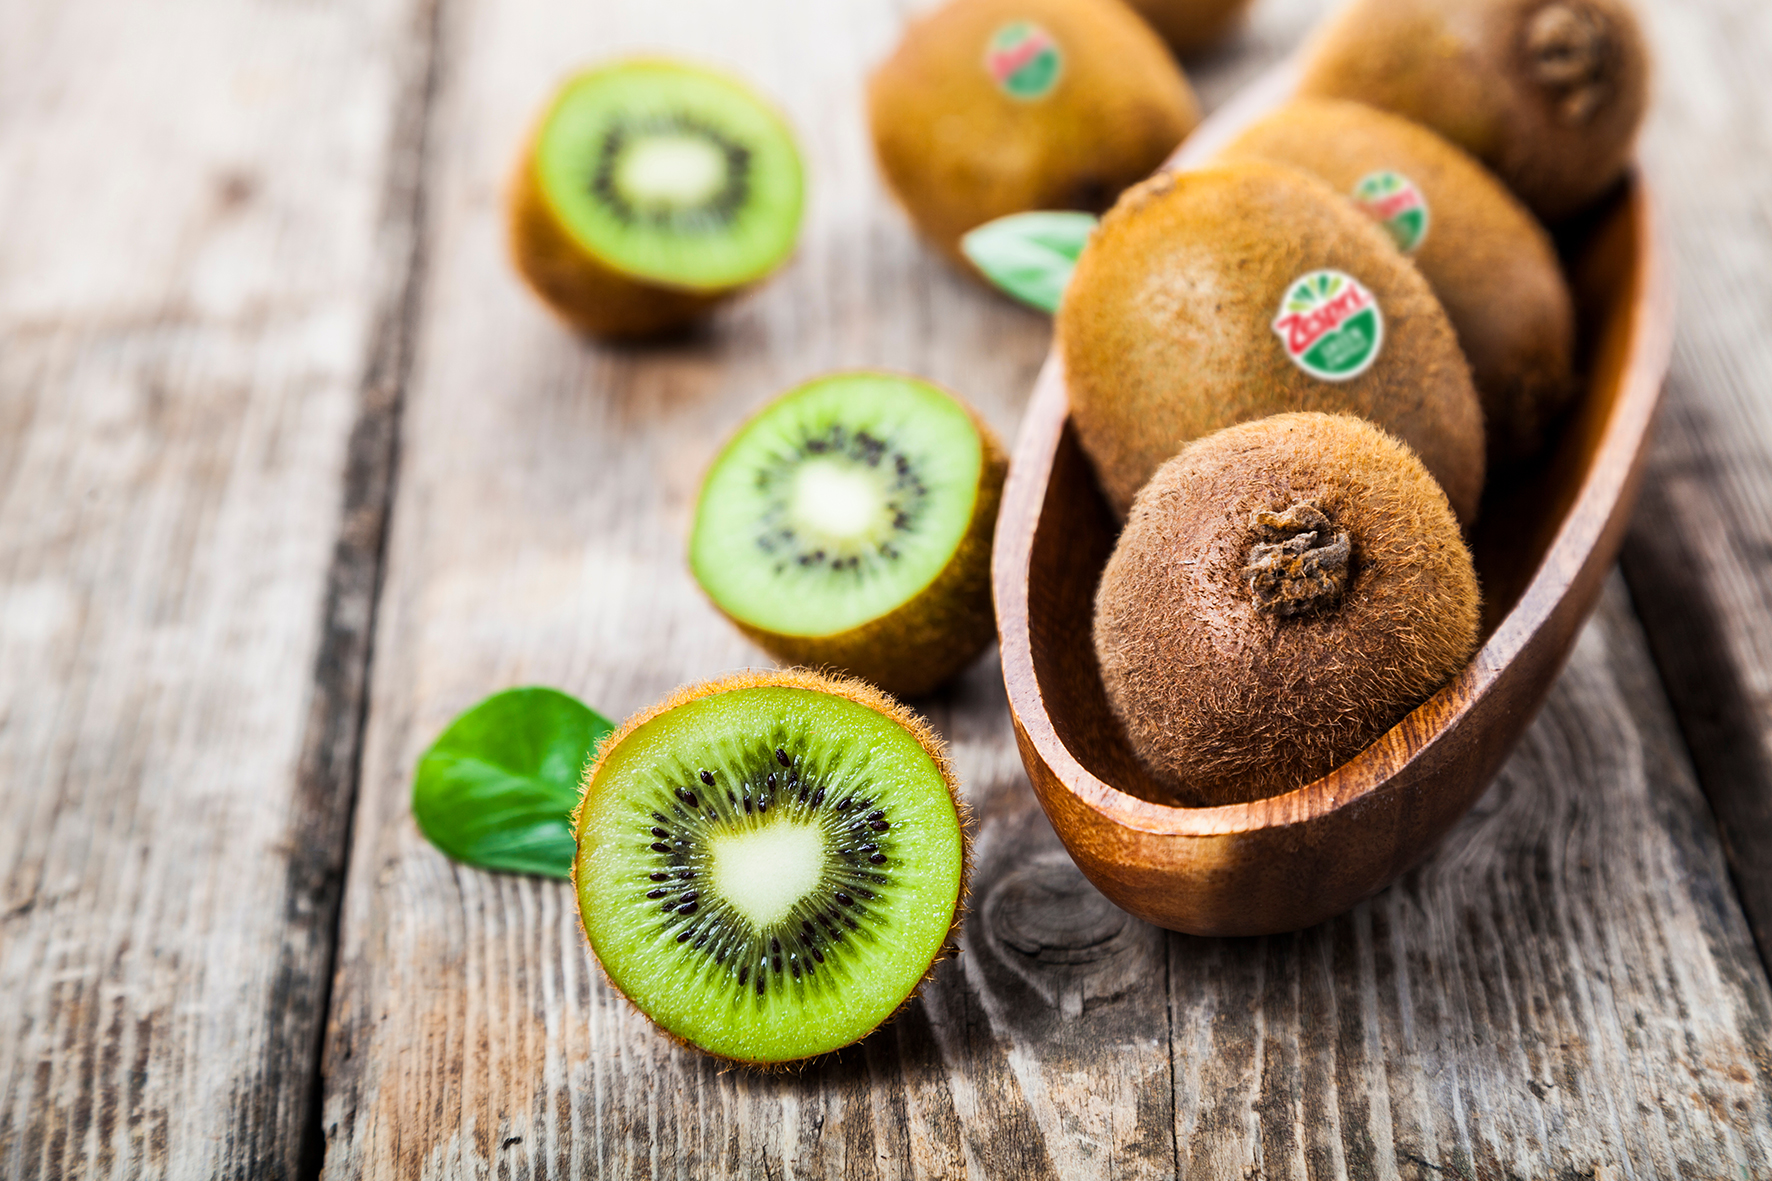 La EFSA corrobora la declaración de propiedad saludable del kiwi verde